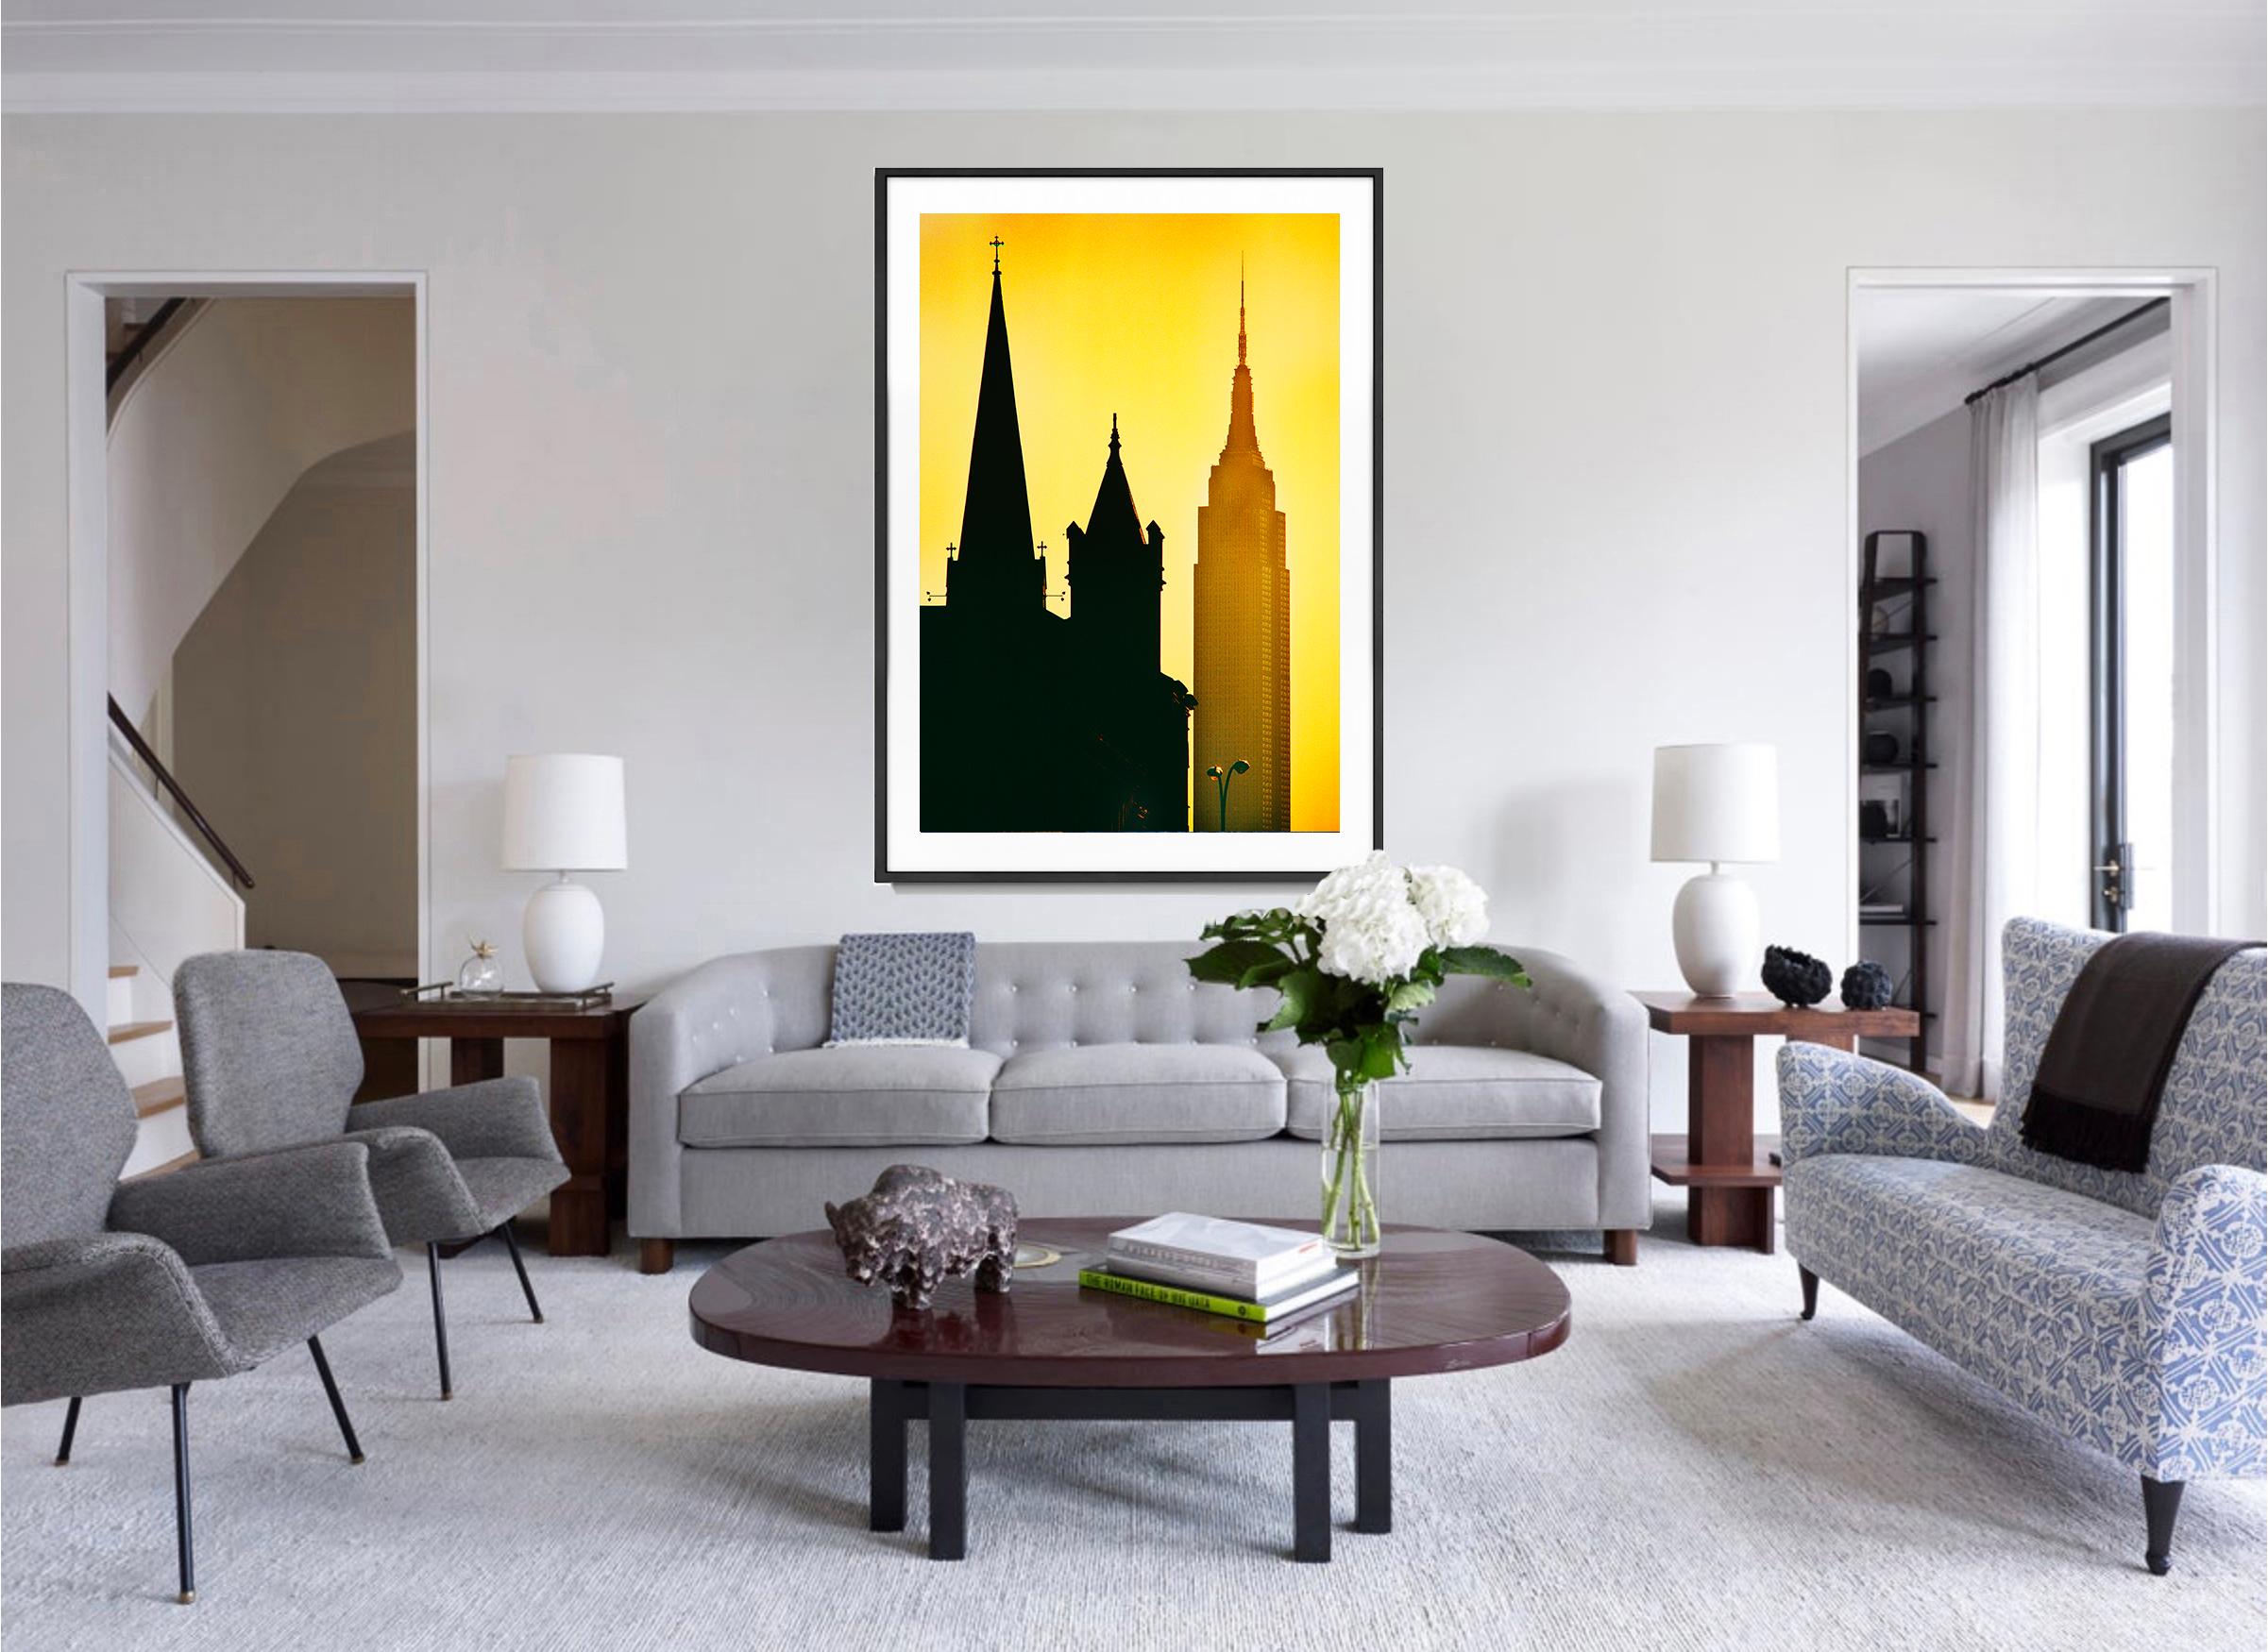 Inspirierende Spiren: Empire State Building in New York City bei Gold-Sonnenuntergang (Post-Impressionismus), Photograph, von Mitchell Funk